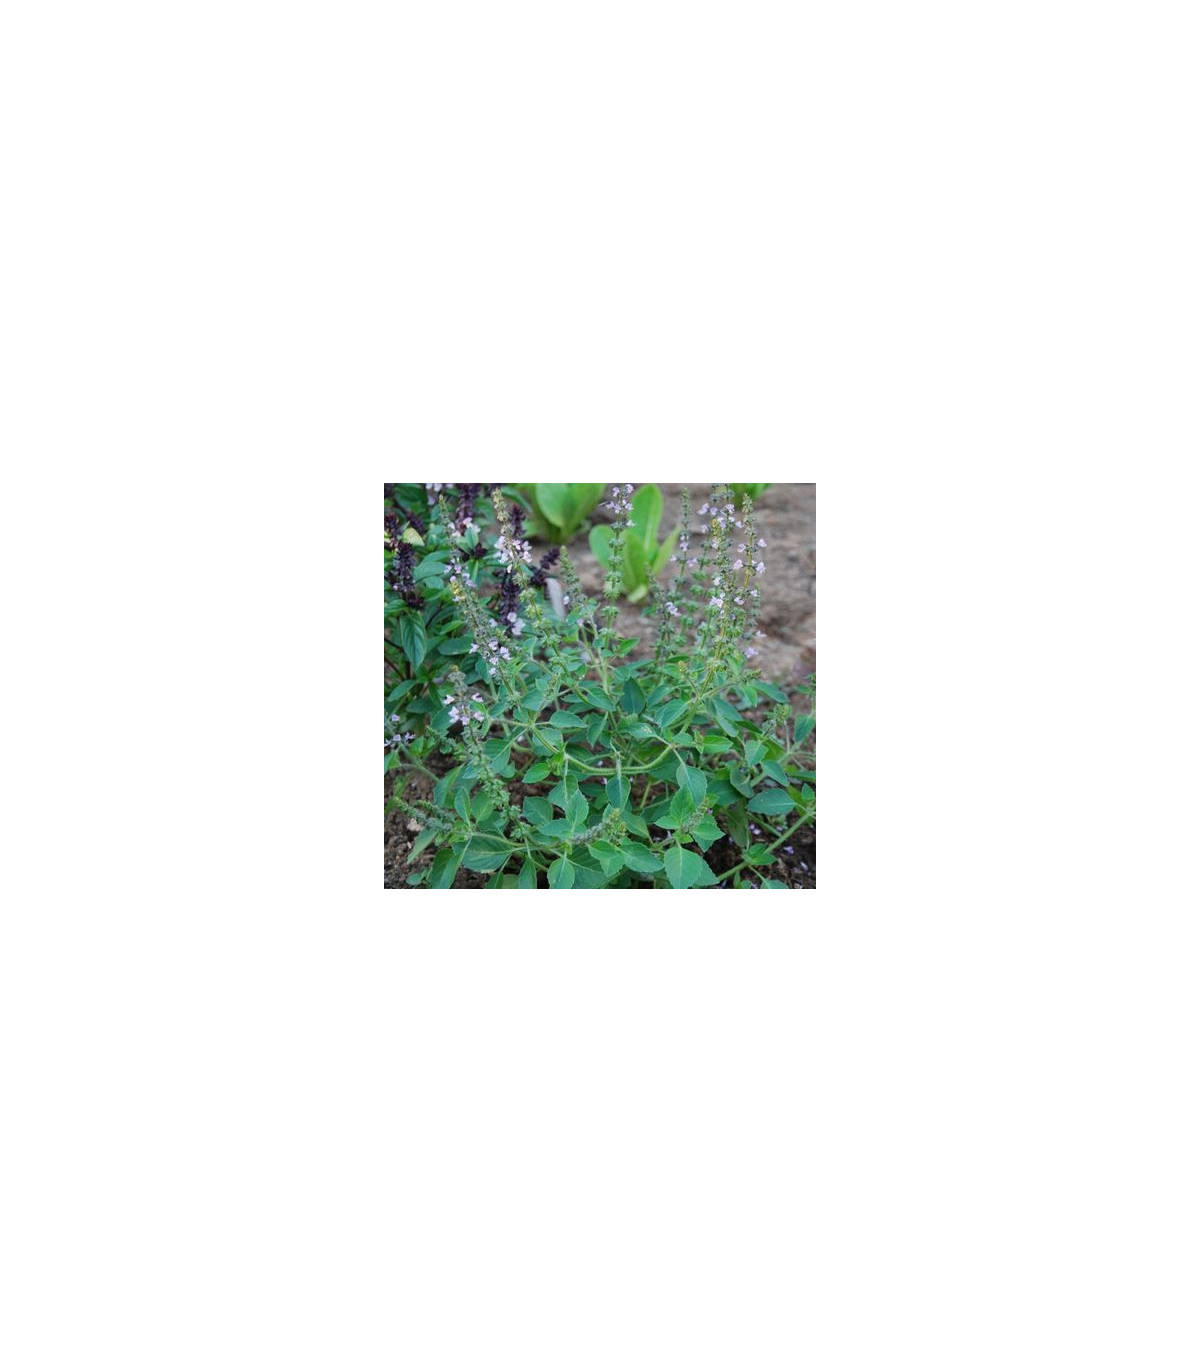 Bazalka pravá Spice - Ocimum basilicum Spice Basil - semiačka - 30 ks